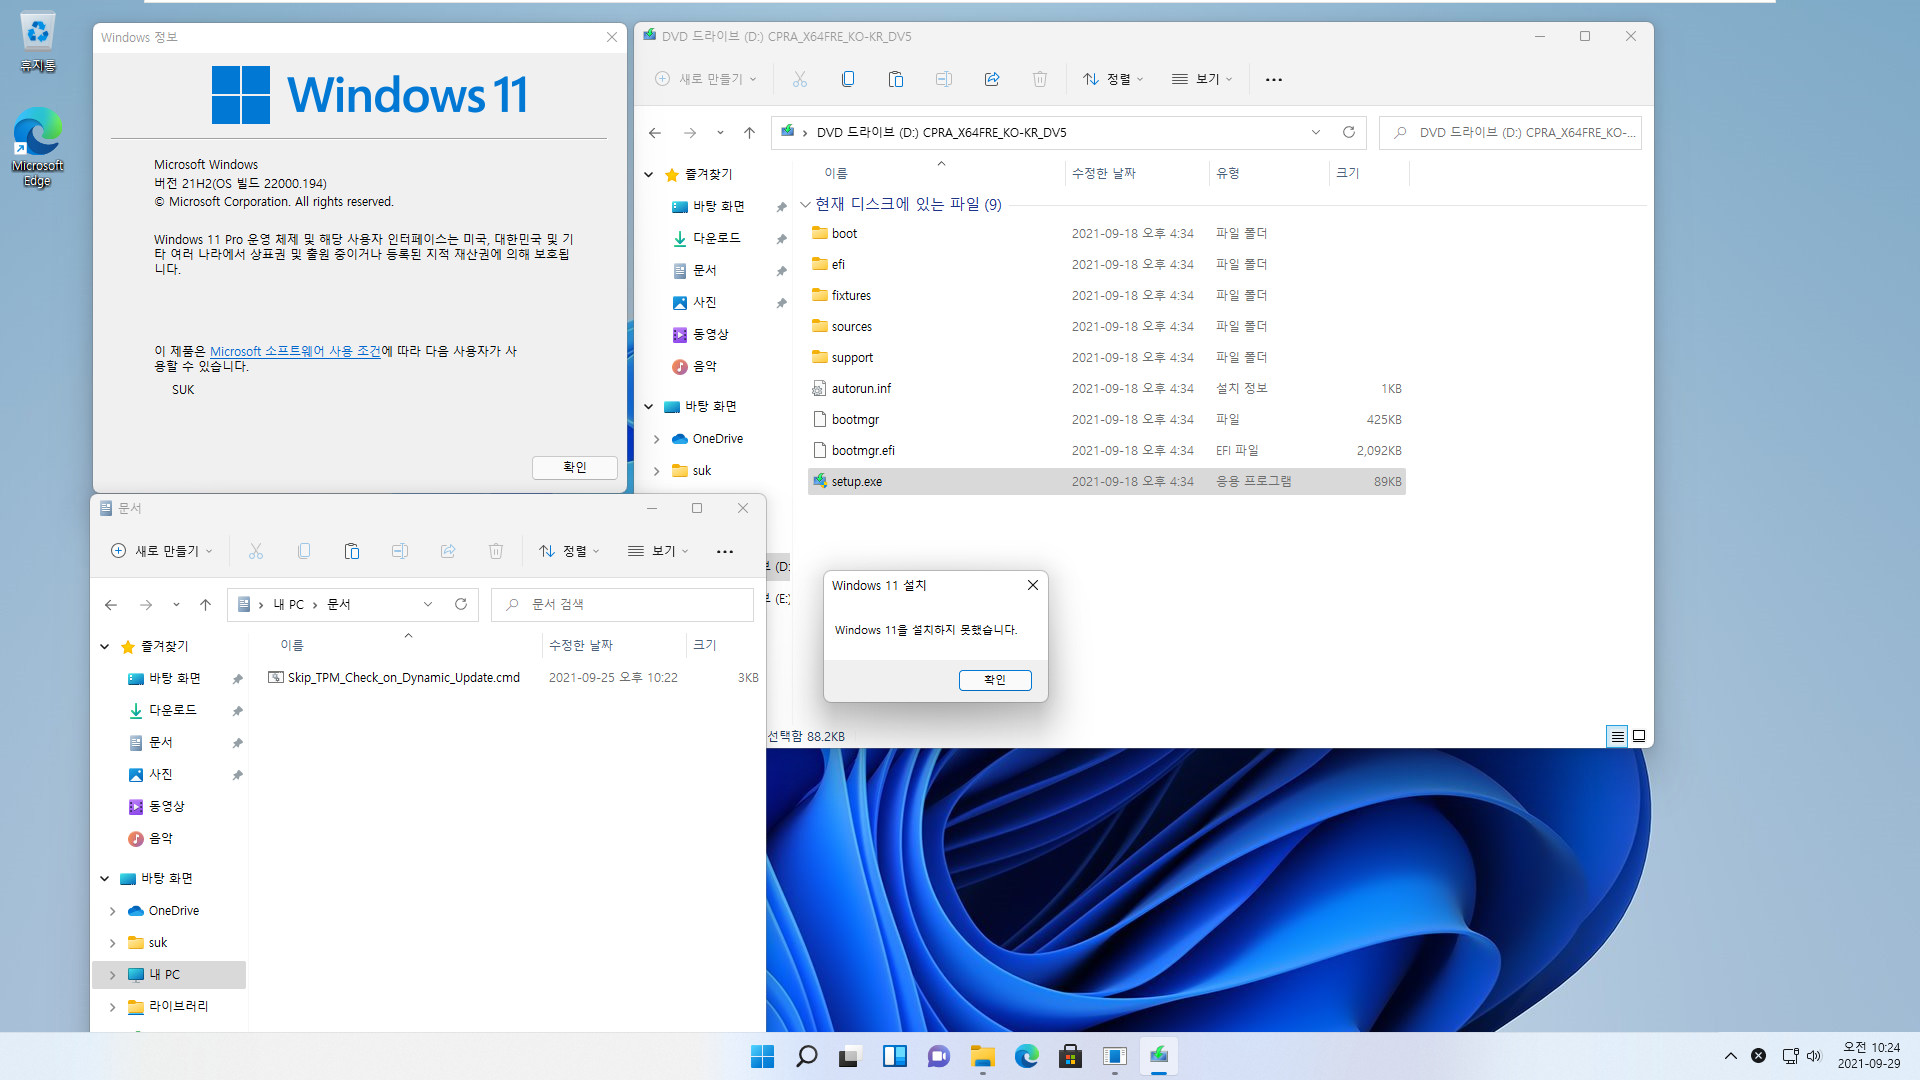 Windows 11 TPM 우회 스크립트 2021-09-29일자 - 이전과 같습니다 - 설치 준비 완료까지는 진행하는데 그 후에 설치 진행이 안 되네요 22463 빌드 ISO 2021-09-29_102443.jpg